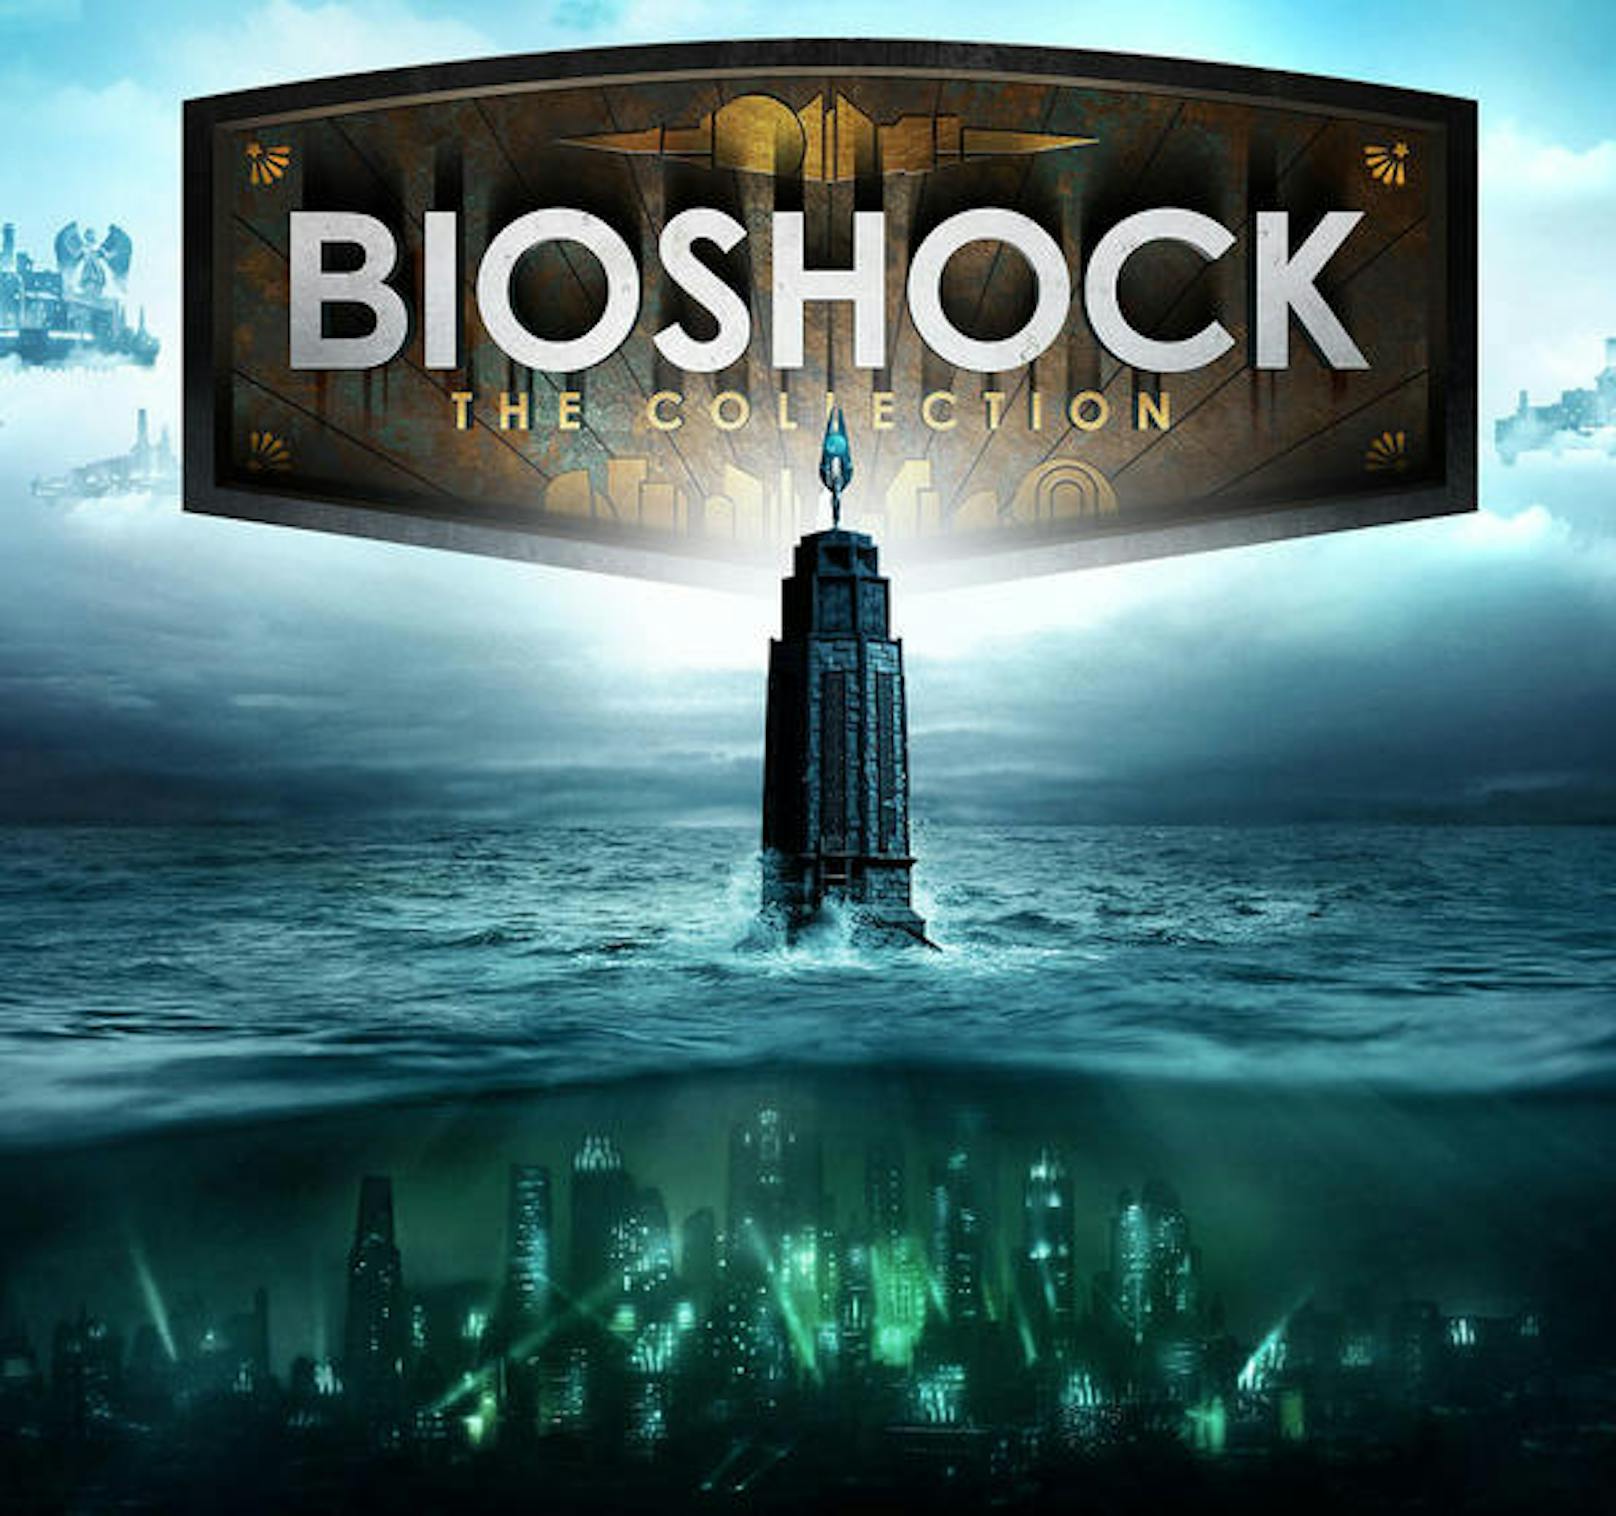 BioShock spielt sich nicht nur genial, die Titel wühlen auch gedanklich auf, beschäftigen den Spieler lange Zeit.